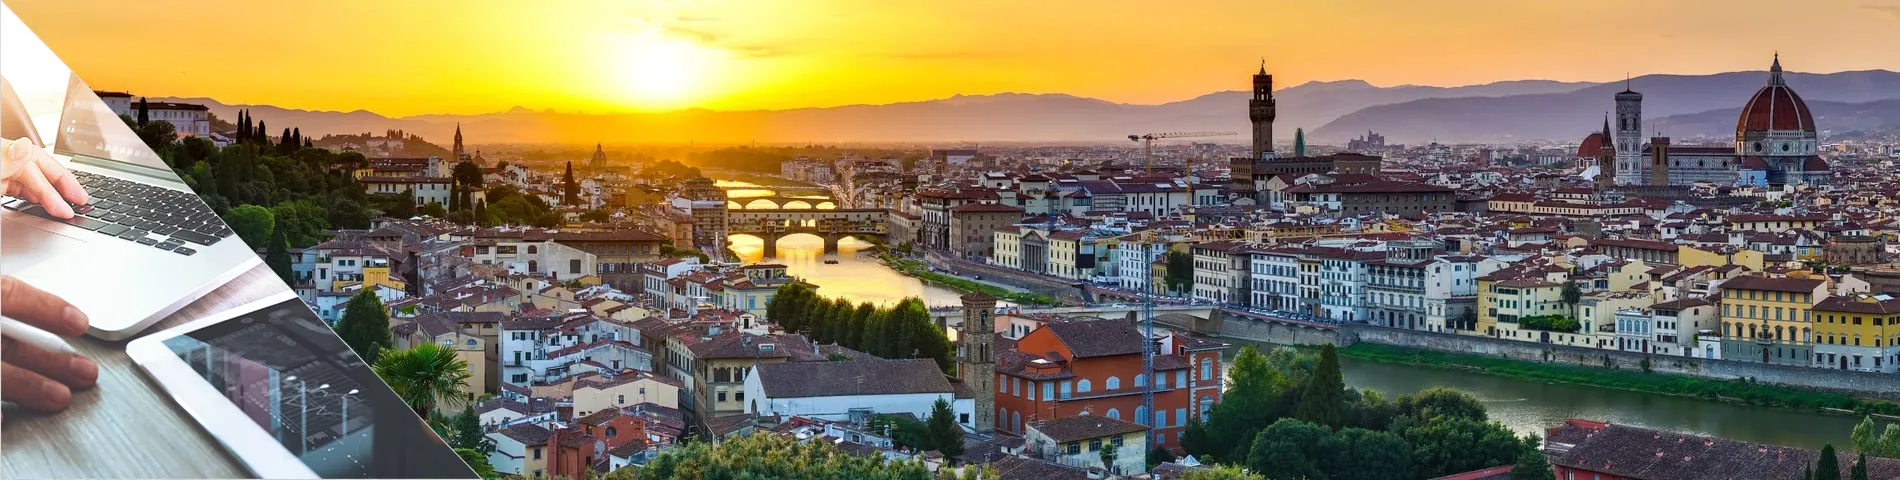 Флоренция - Итальянский & цифровые средстава коммуникации